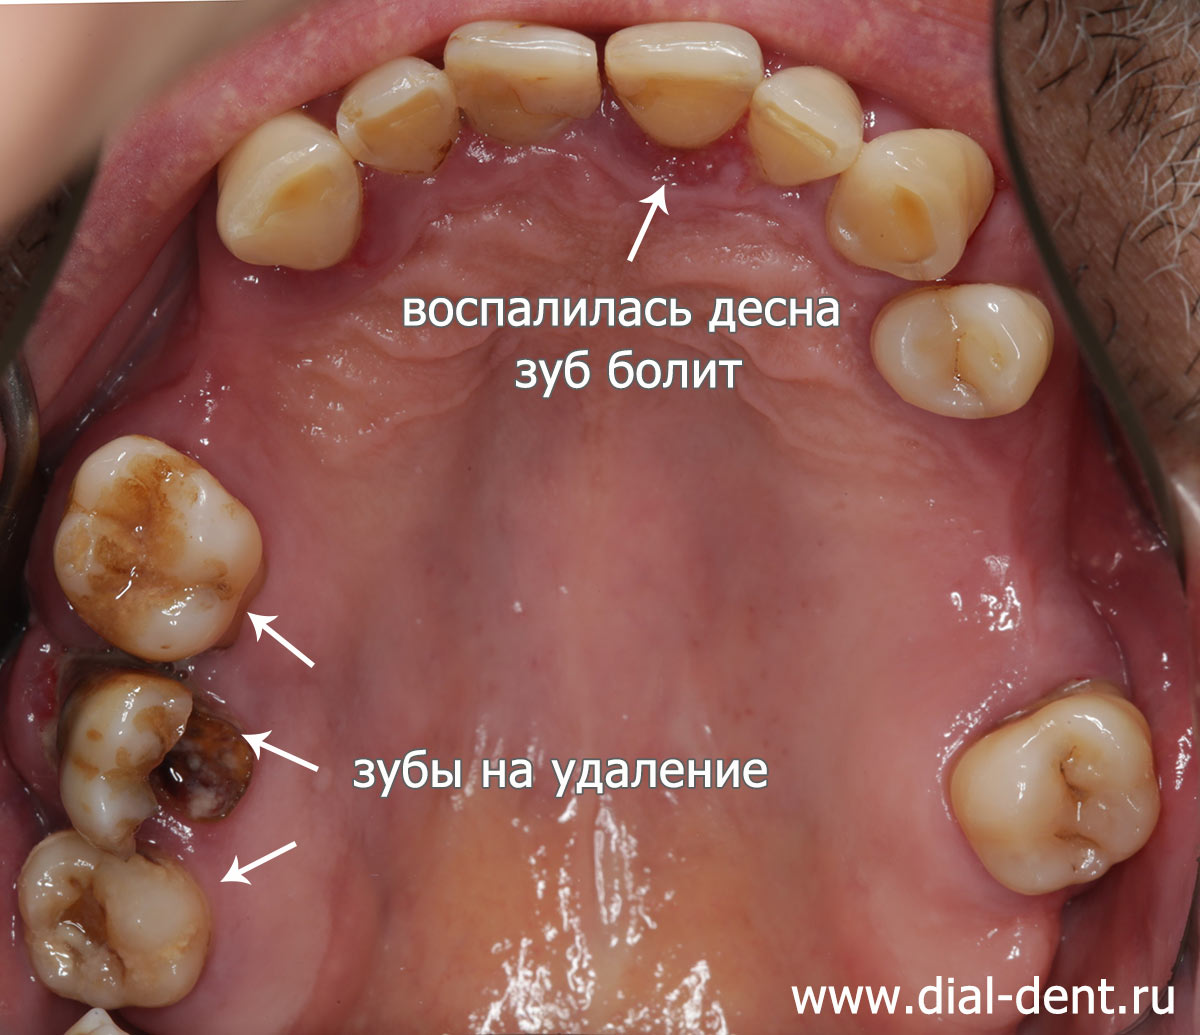 пародонтит, воспаление десны, шатаются зубы